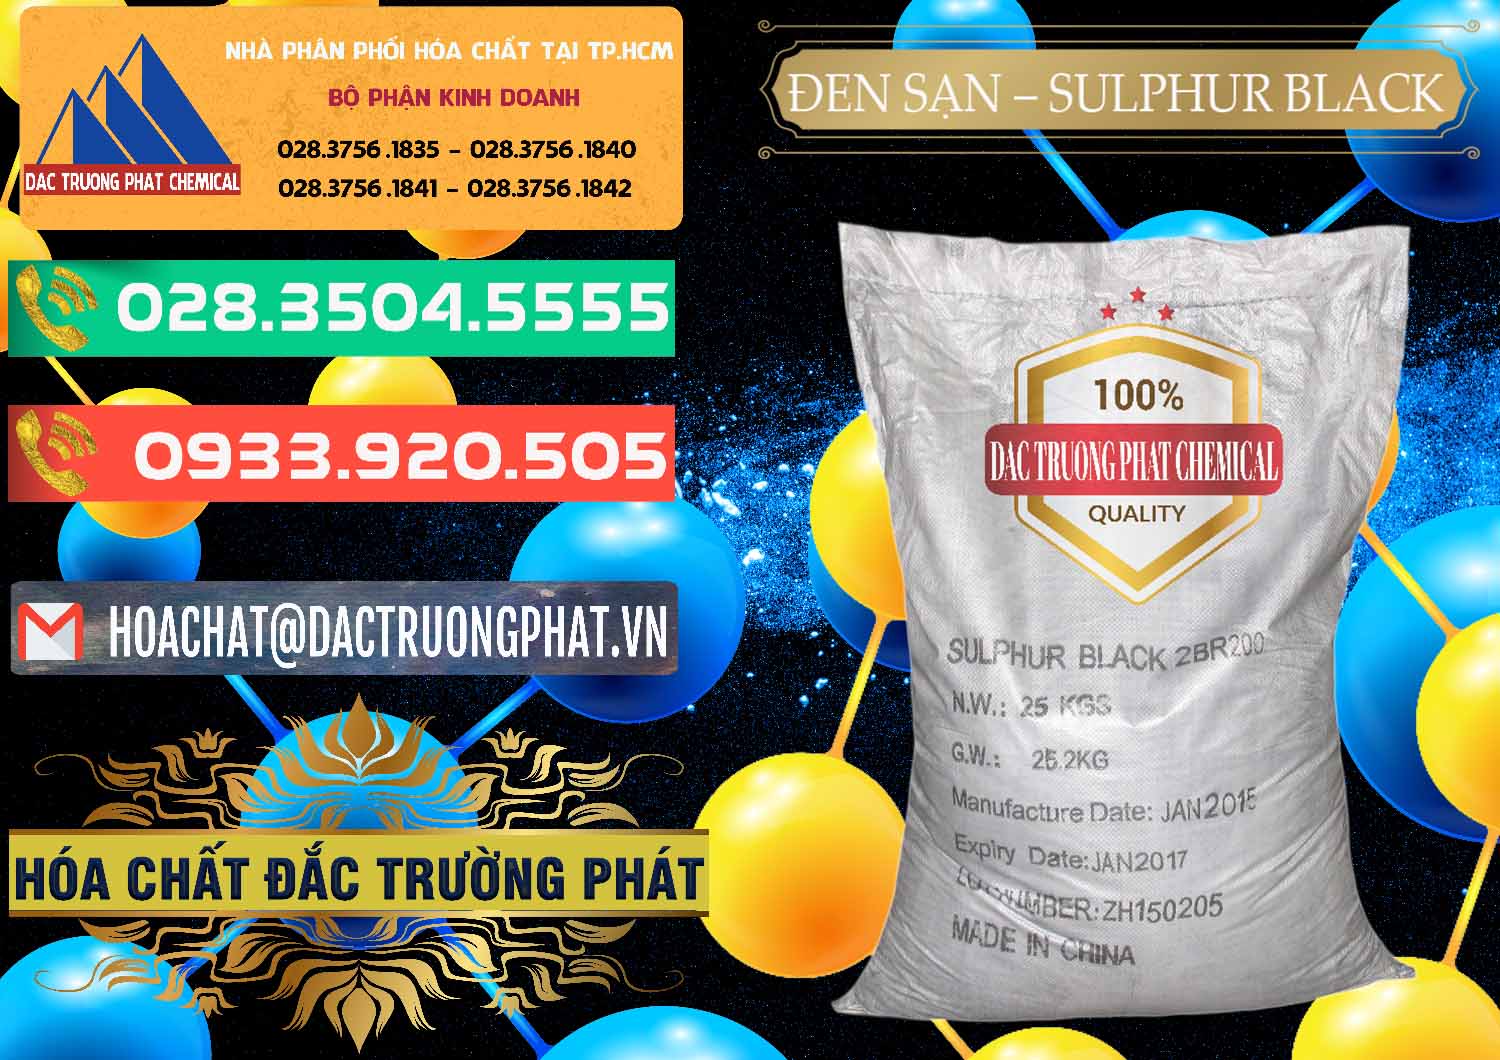 Nơi chuyên cung cấp ( bán ) Đen Sạn – Sulphur Black Trung Quốc China - 0062 - Đơn vị phân phối ( cung cấp ) hóa chất tại TP.HCM - congtyhoachat.com.vn